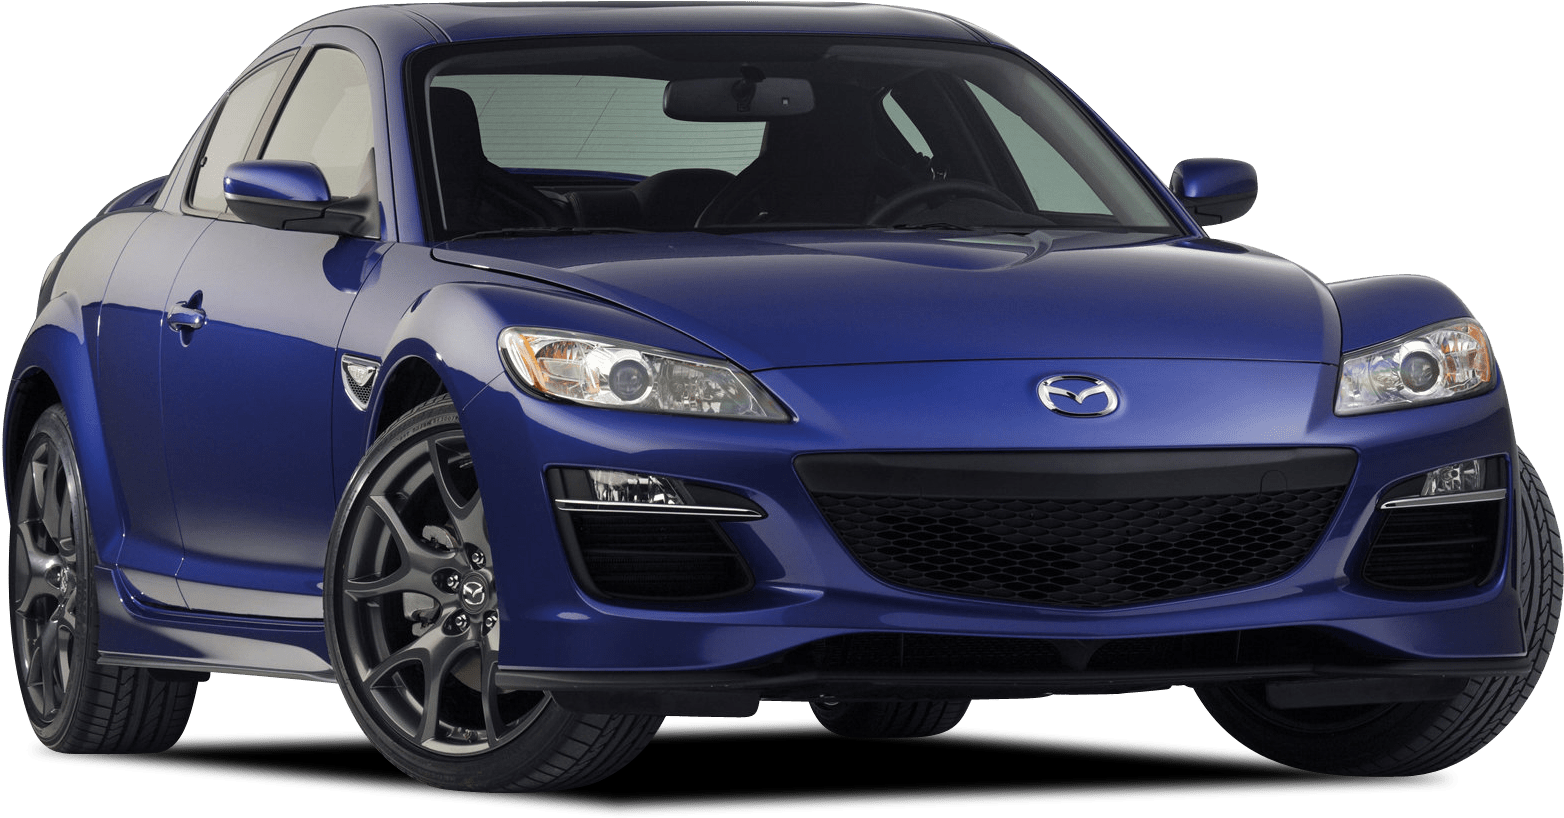 Afbeelding van NZ536K, blauwe Mazda Rx-8 sedan